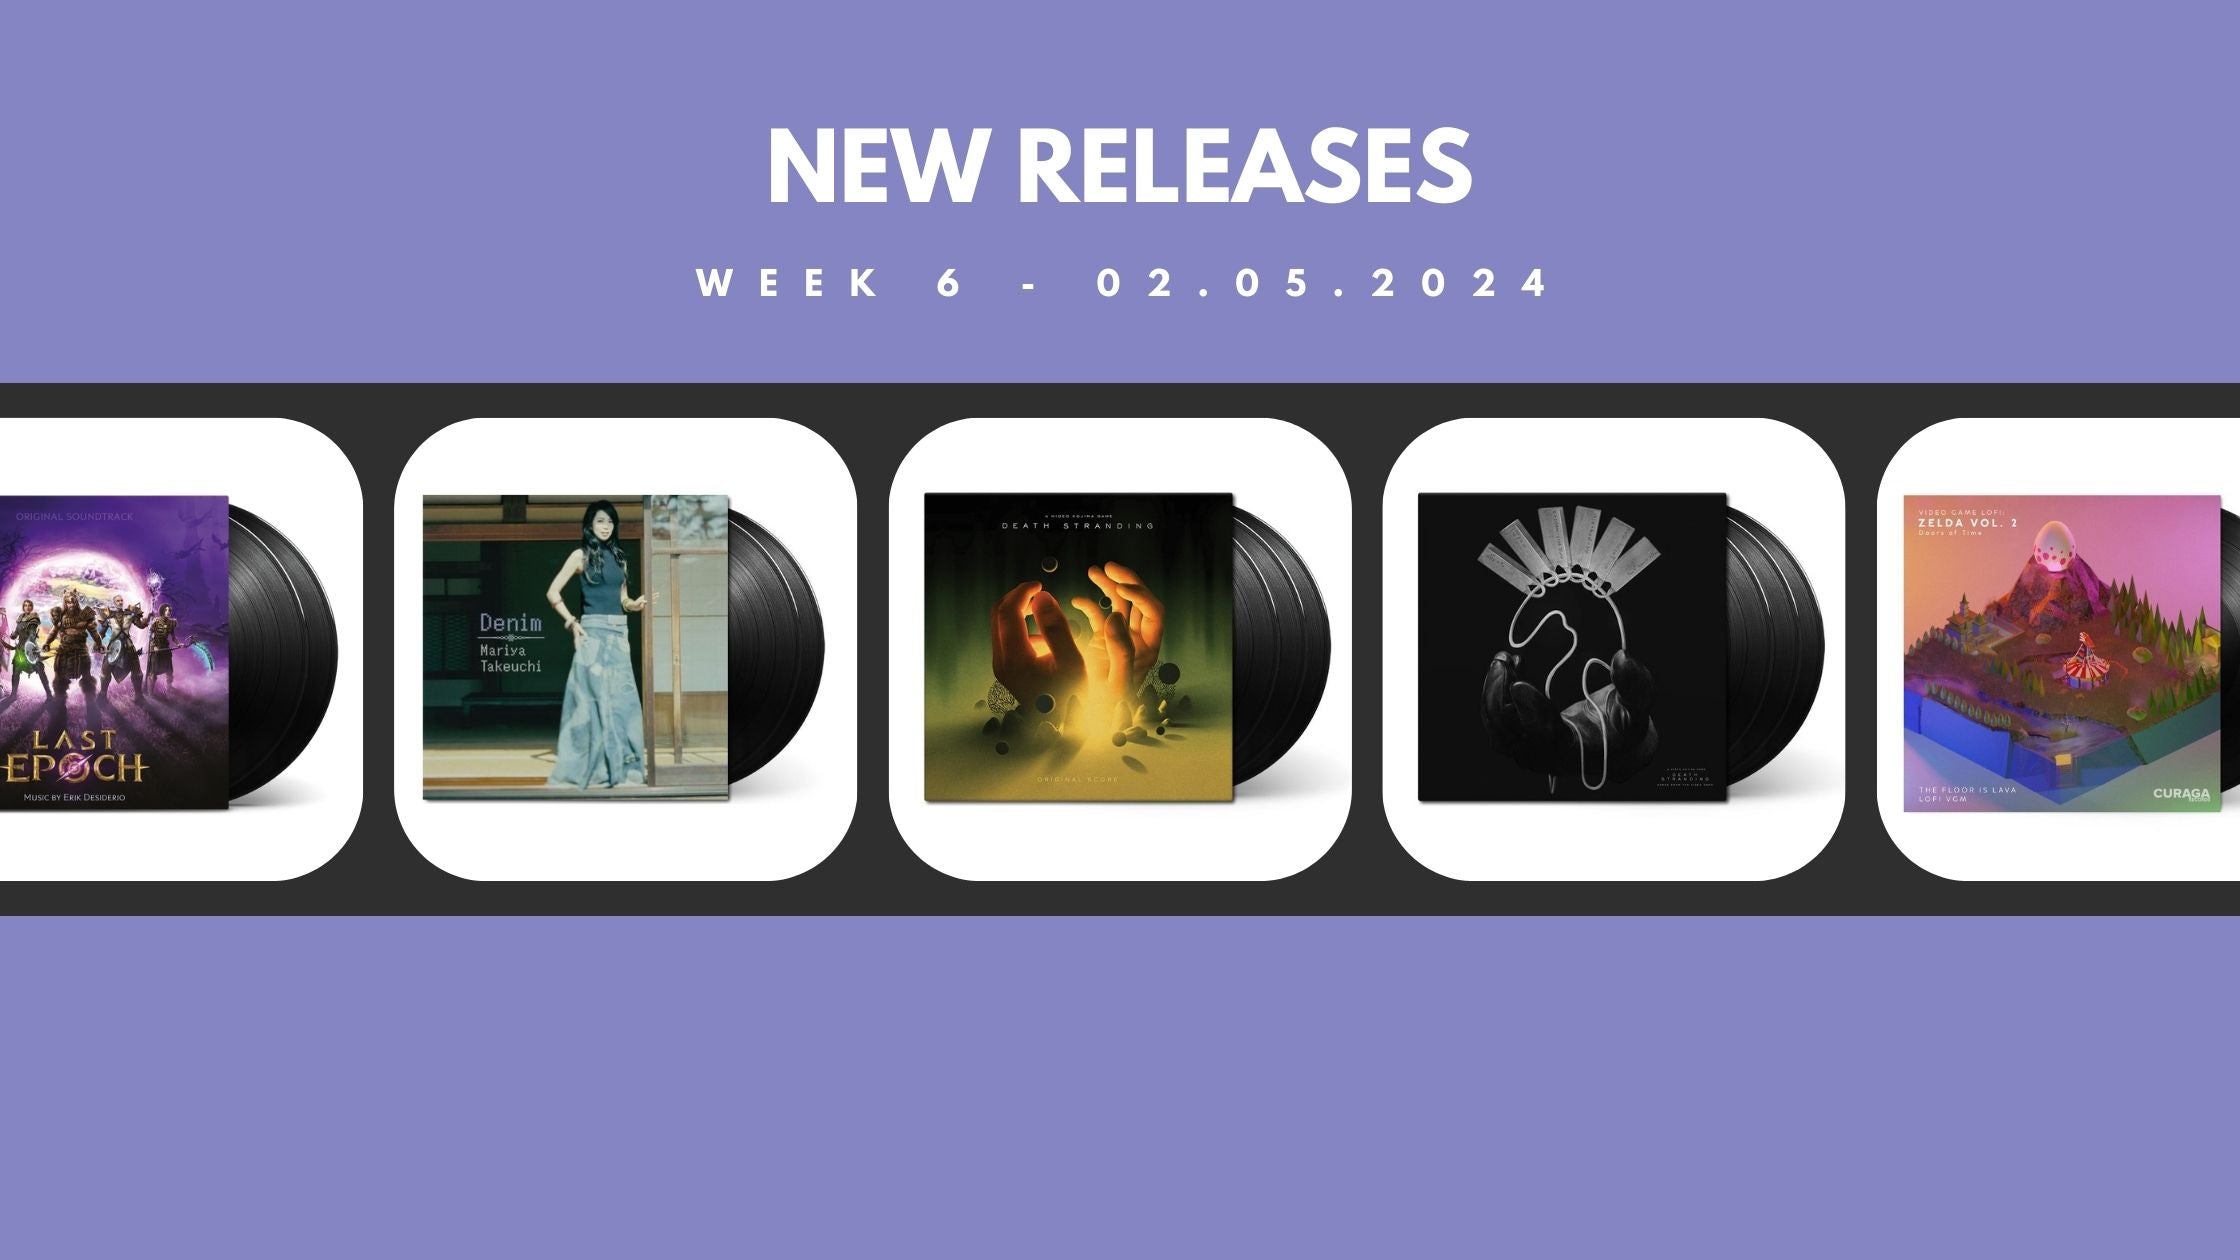 New Releases: Week 6 - February 5, 2024